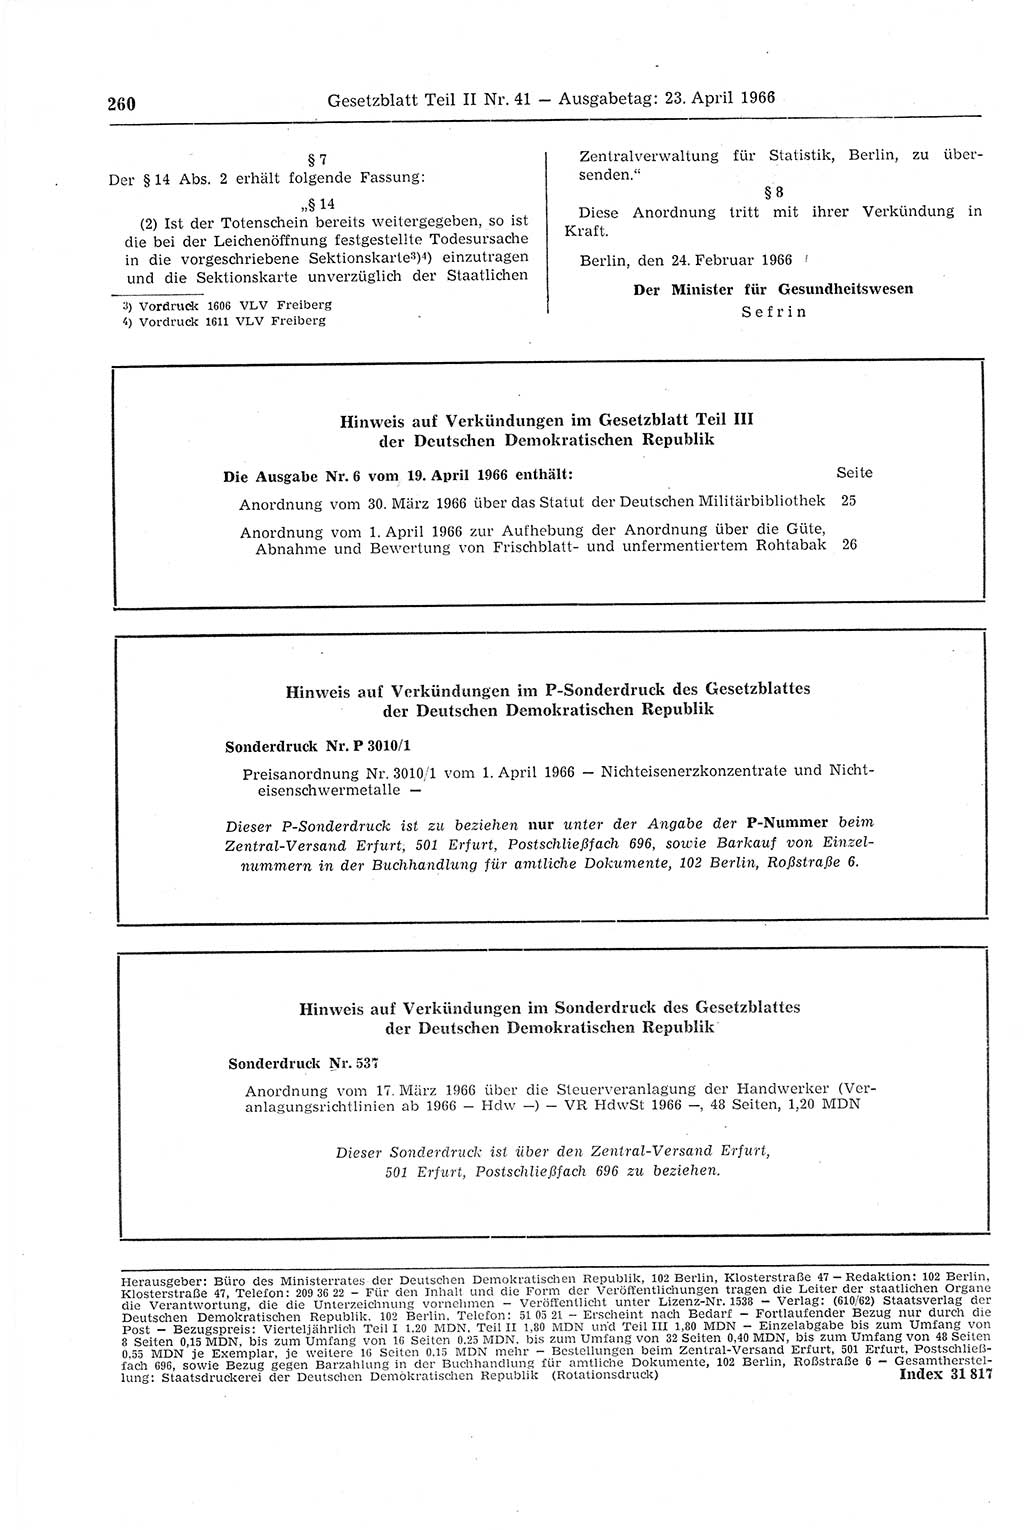 Gesetzblatt (GBl.) der Deutschen Demokratischen Republik (DDR) Teil ⅠⅠ 1966, Seite 260 (GBl. DDR ⅠⅠ 1966, S. 260)